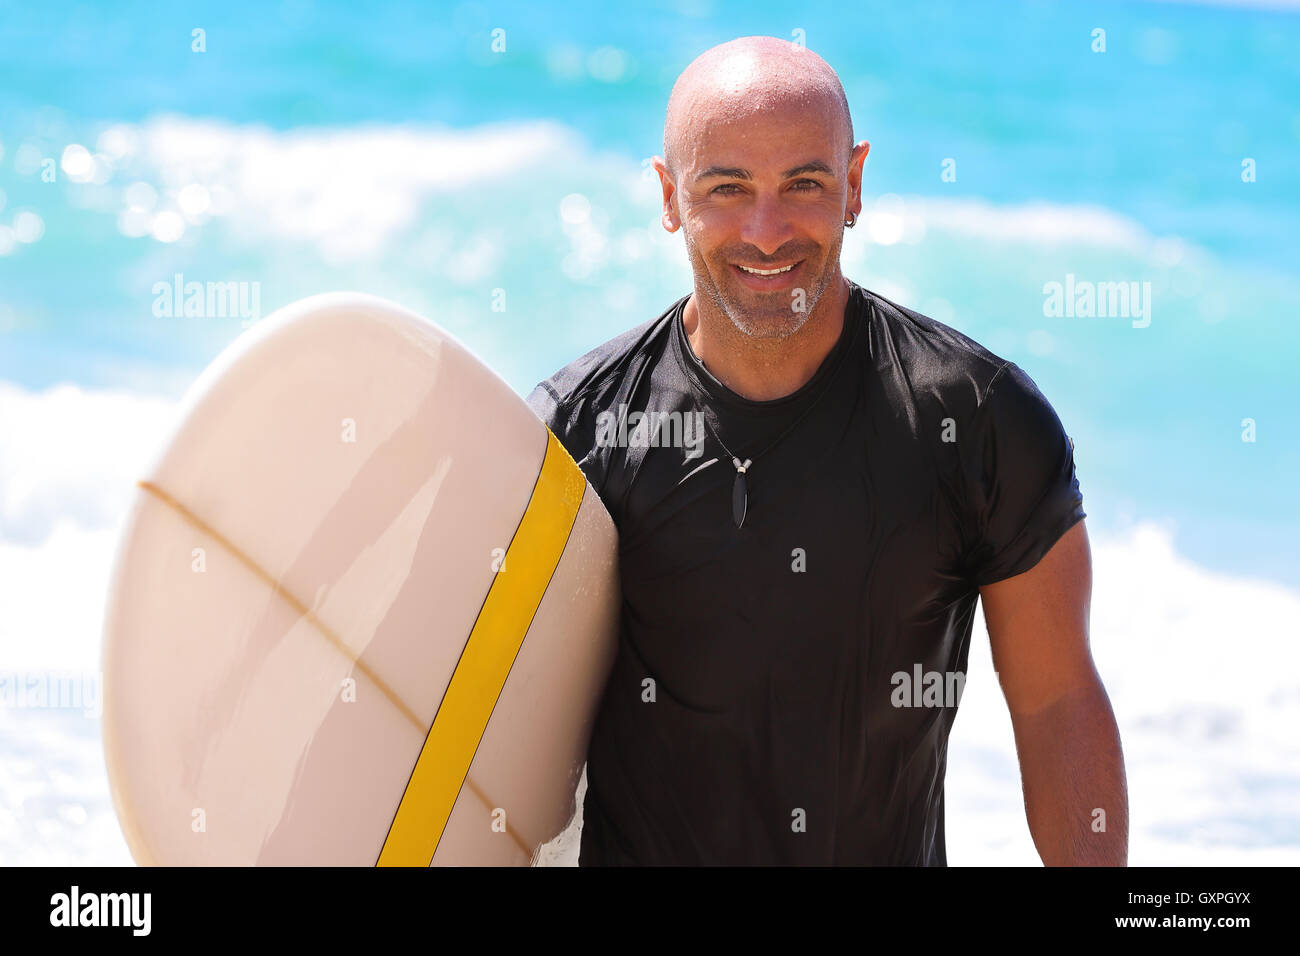 Retrato de un hombre hermoso con tabla de surf en mano, hermoso instructor de surf en la playa, disfrutando del agua, deporte de verano activo Foto de stock